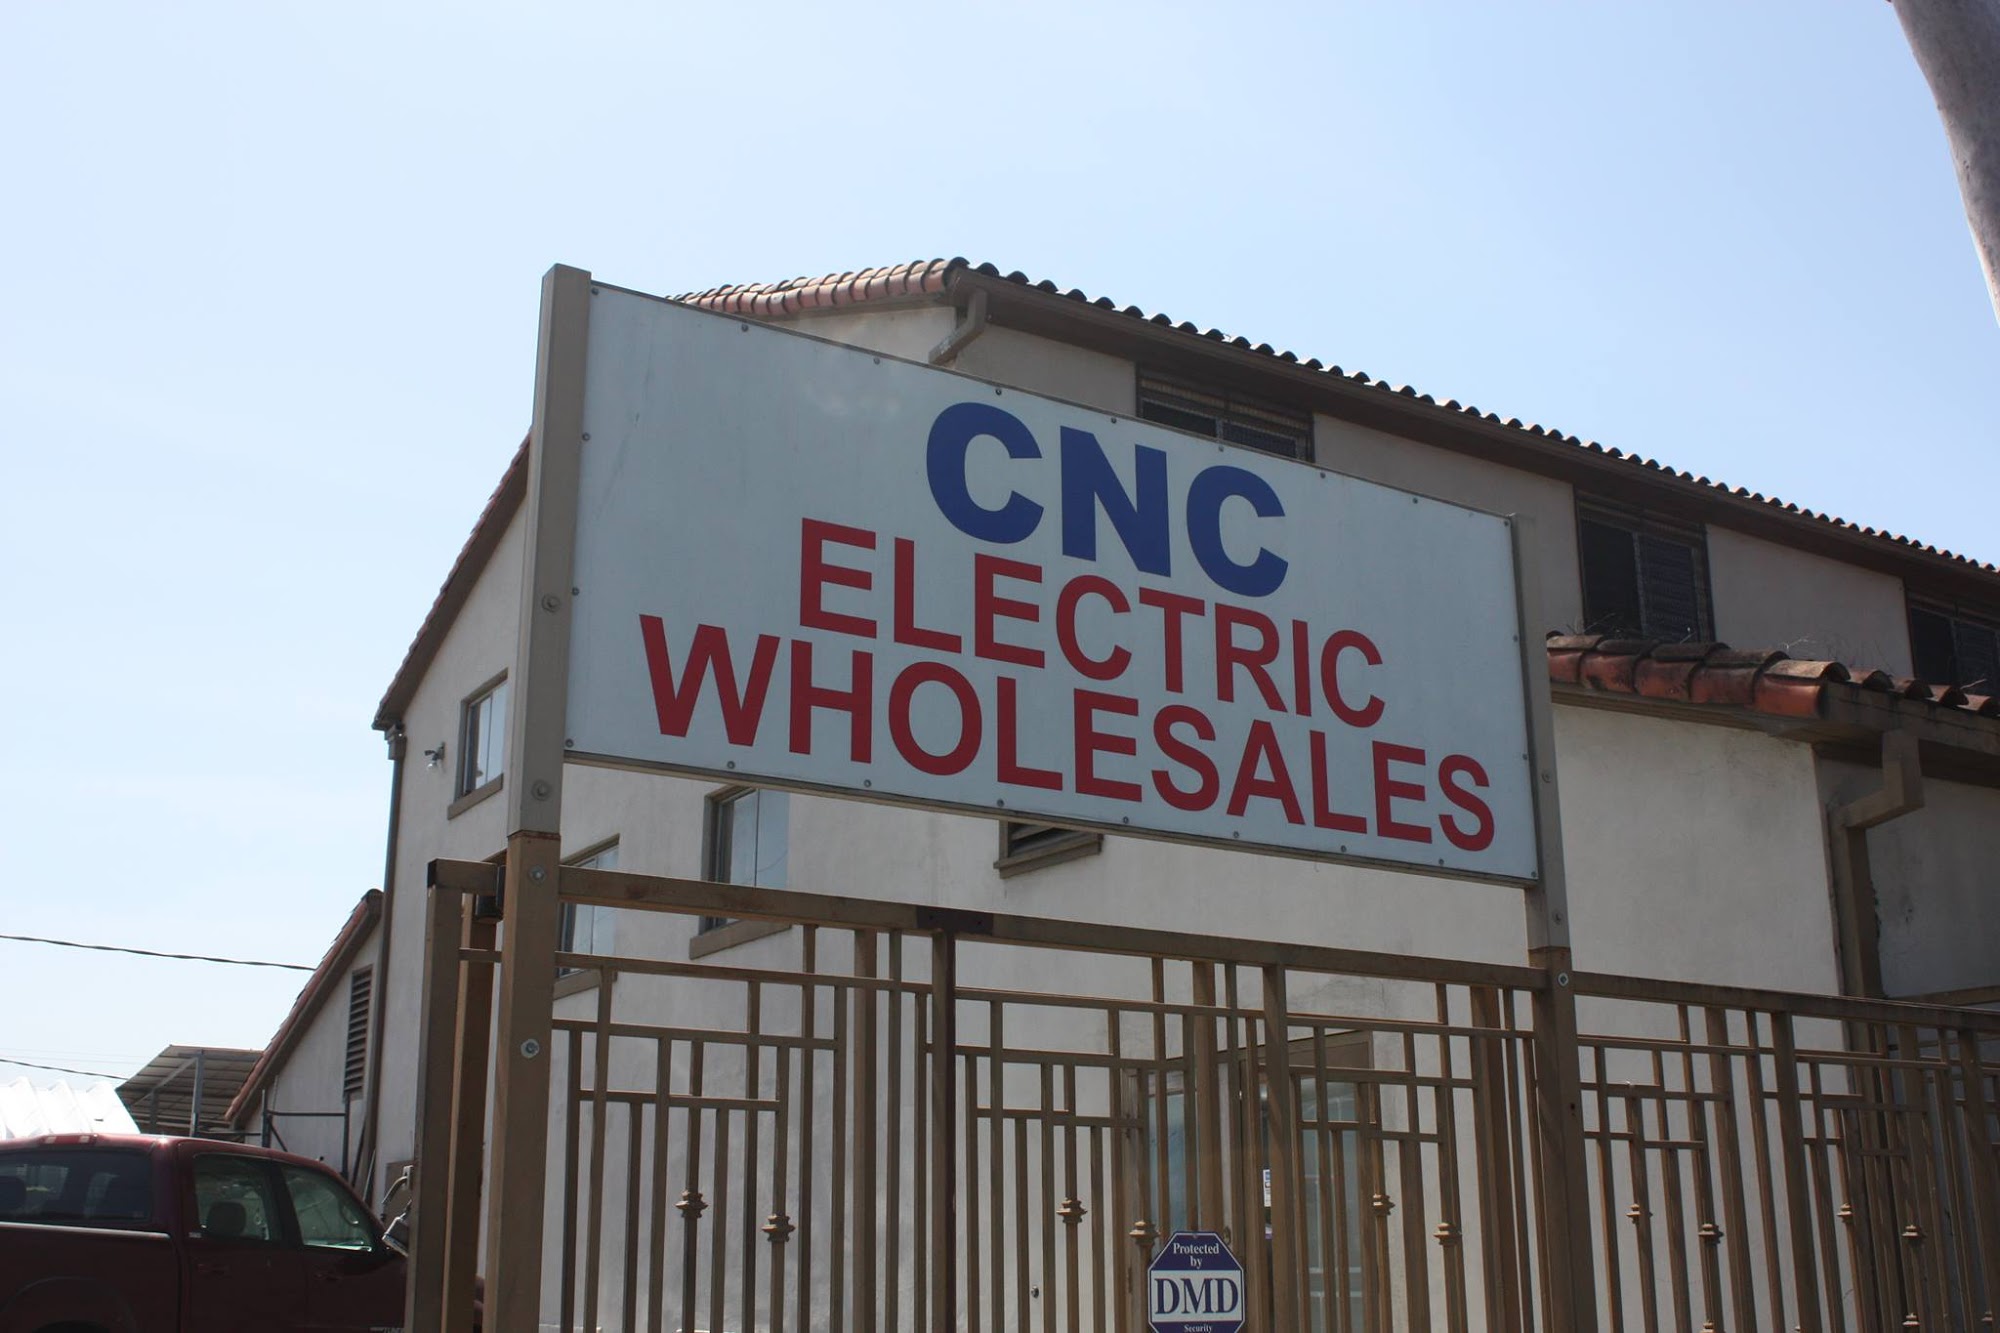 CNC Electric Wholesales